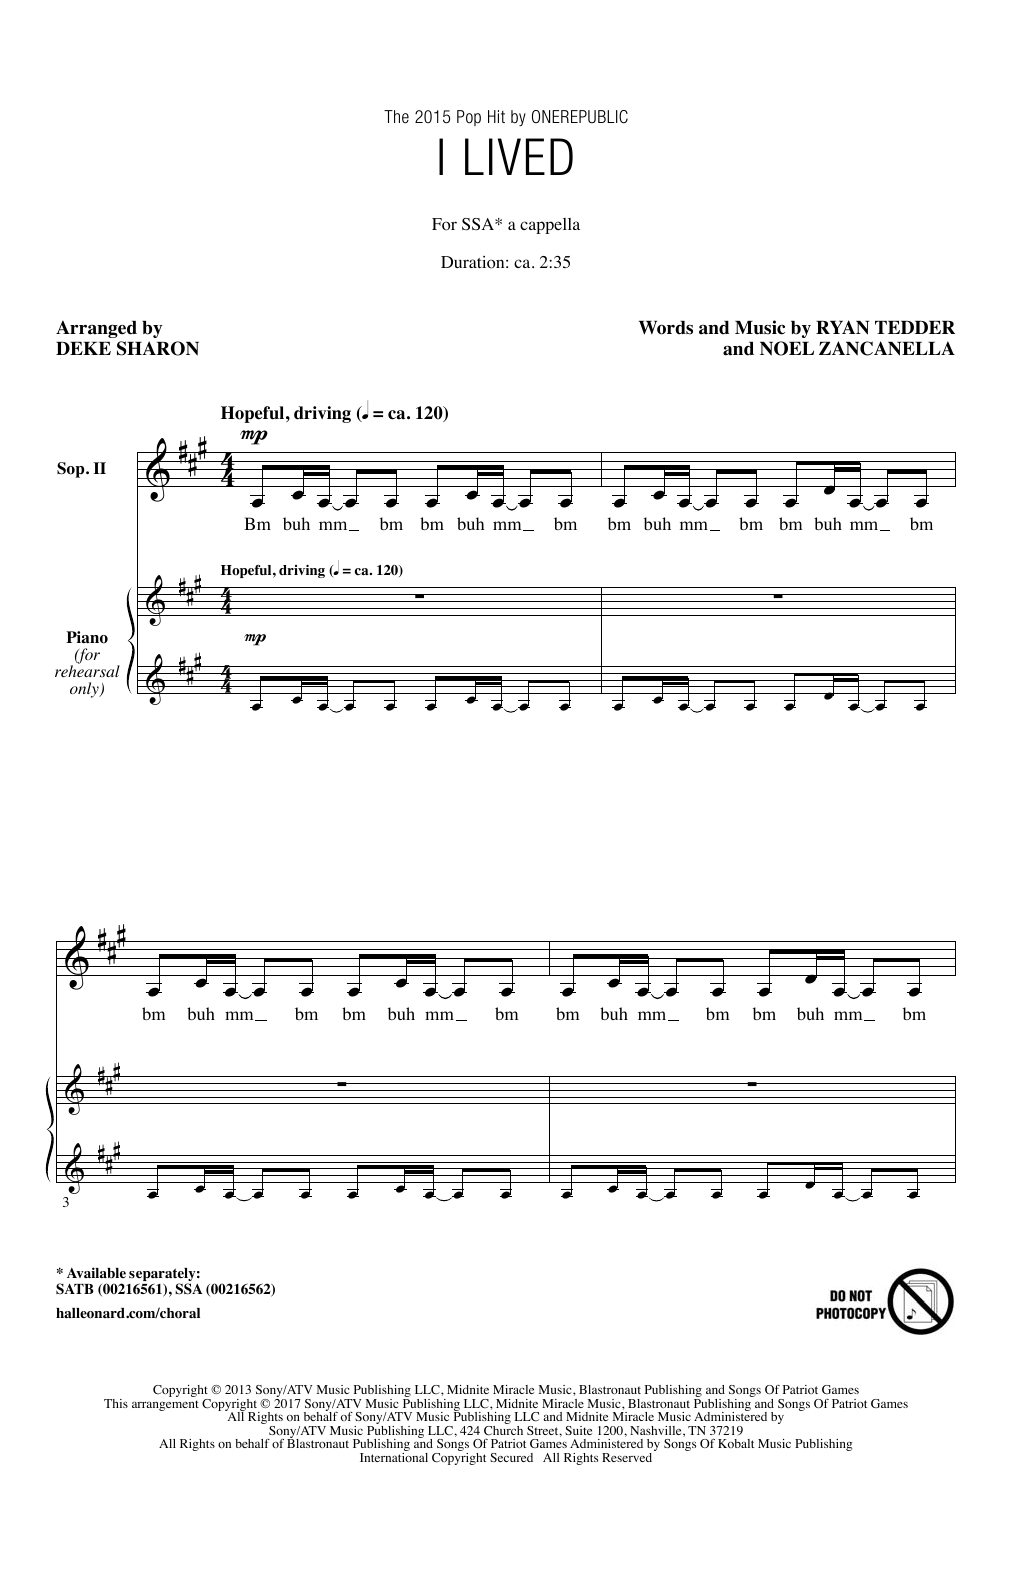 OneRepublic I Lived (arr. Deke Sharon) Sheet Music Notes & Chords for SSA - Download or Print PDF